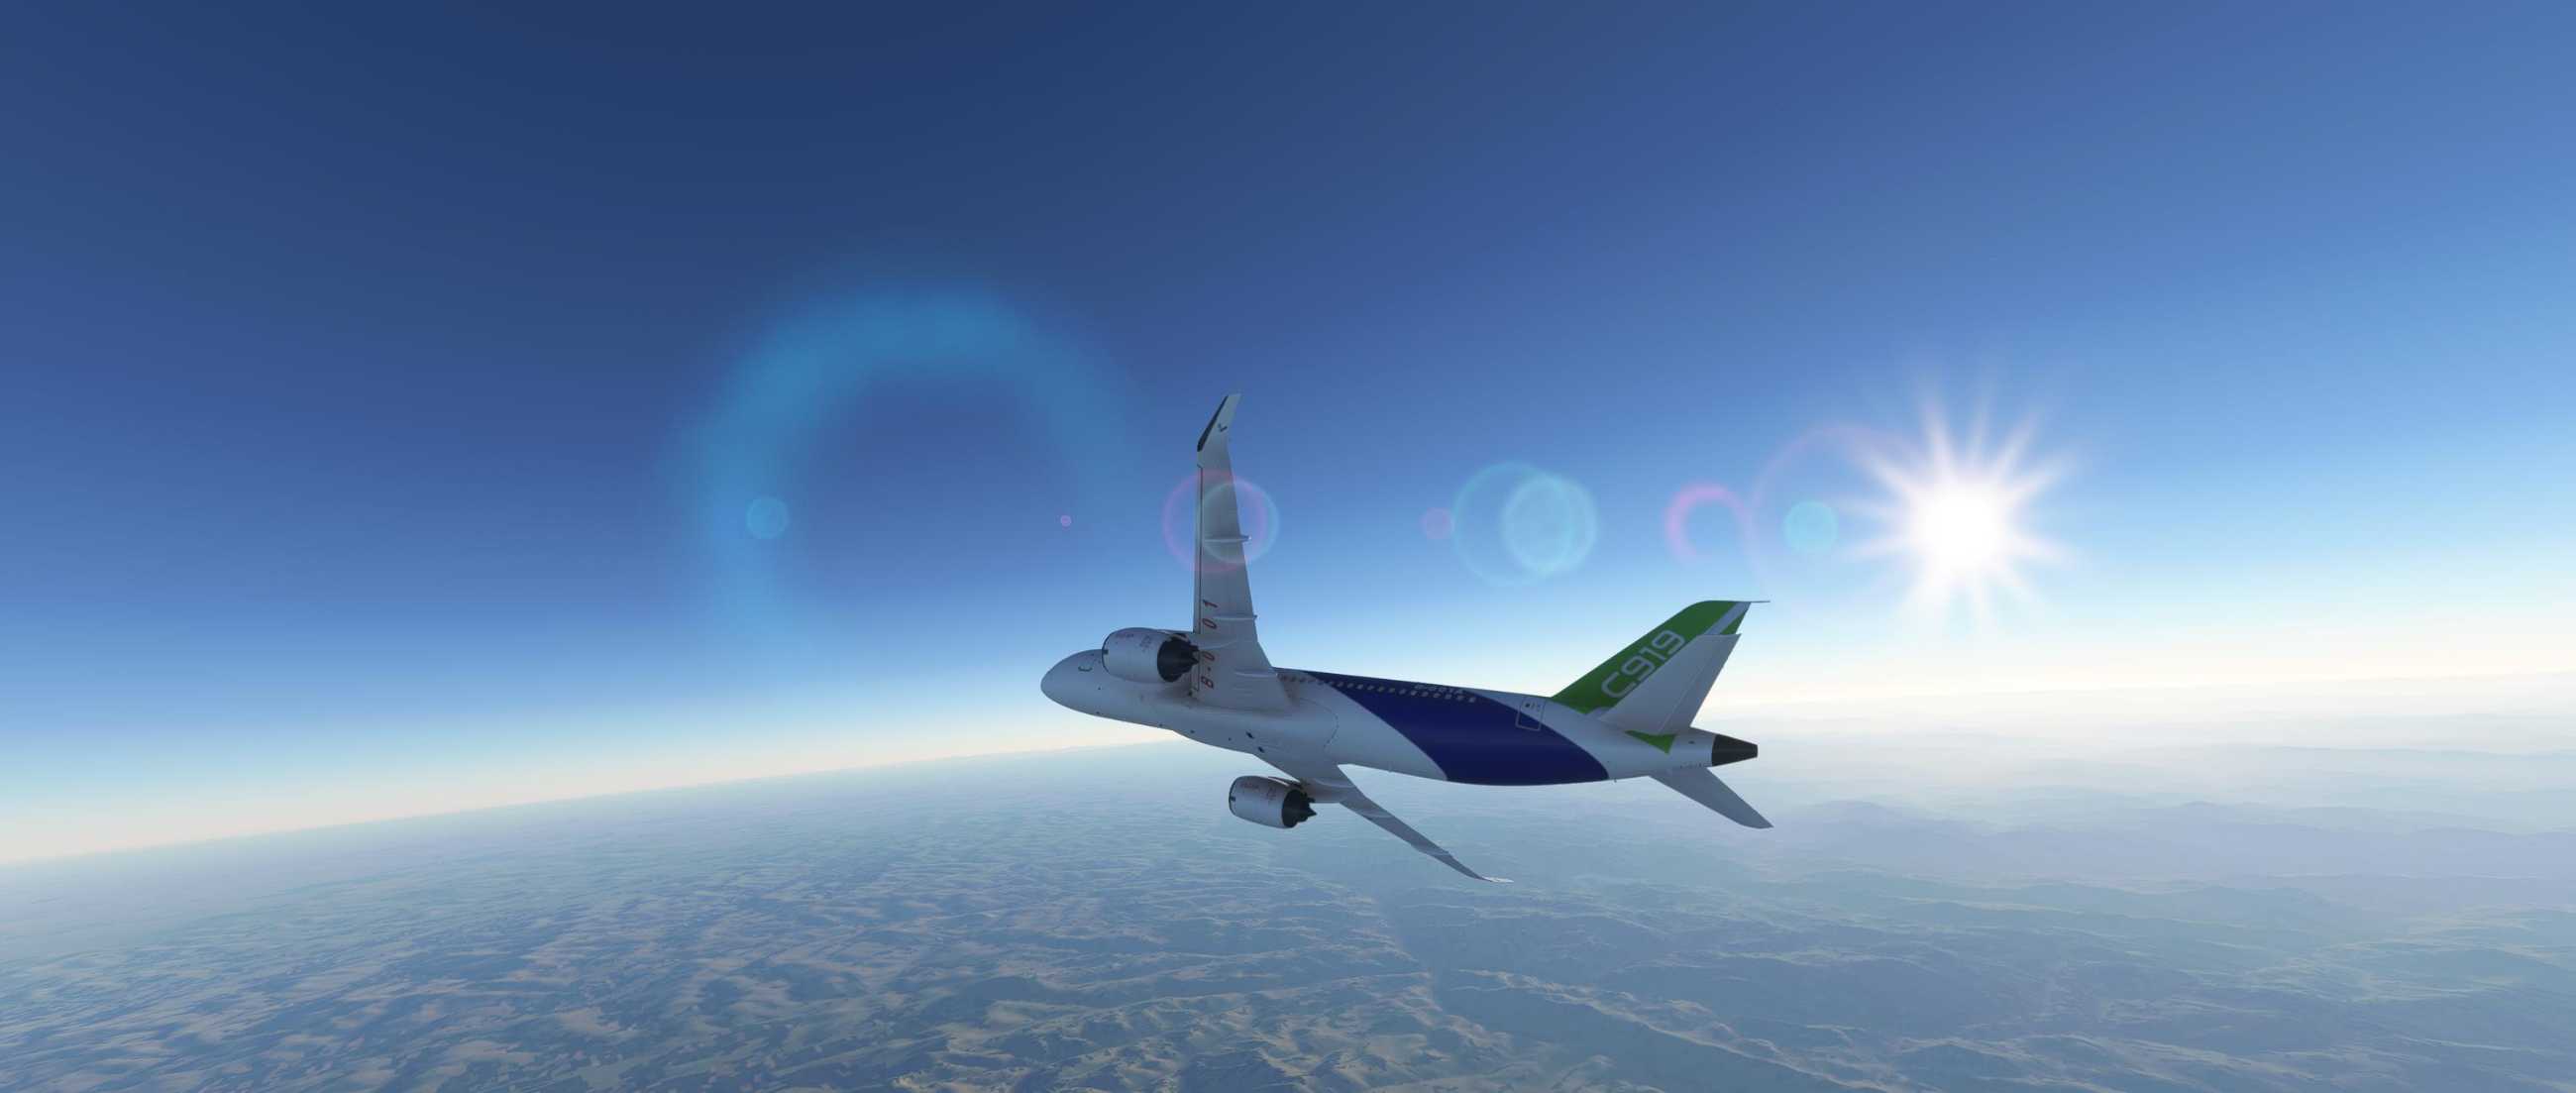 FYCYC-C919 国产大飞机机模 微软模拟飞行演示-6096 